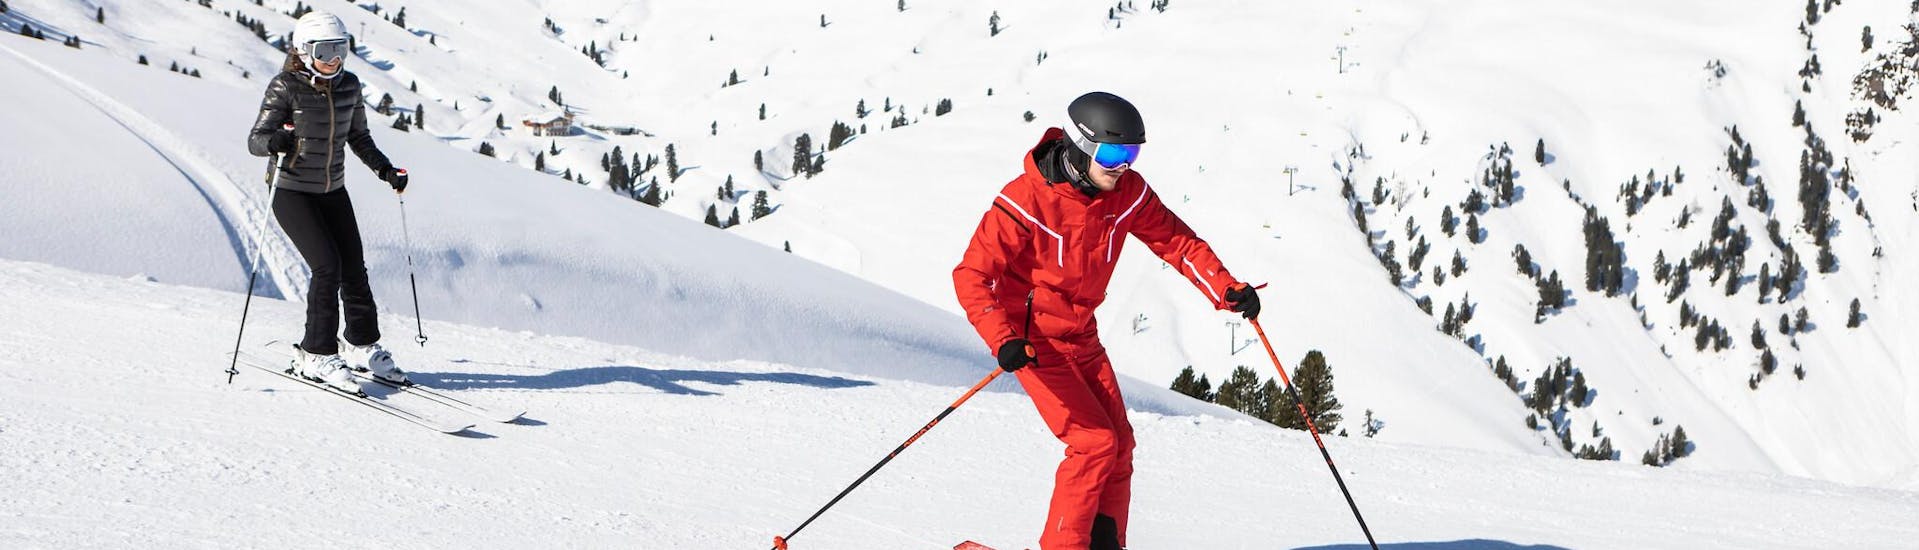 Un skieur travaille sa technique de ski avec son moniteur de ski lors d'un cours particulier de ski dans la destination de ski Courchevel 1550 - Village.